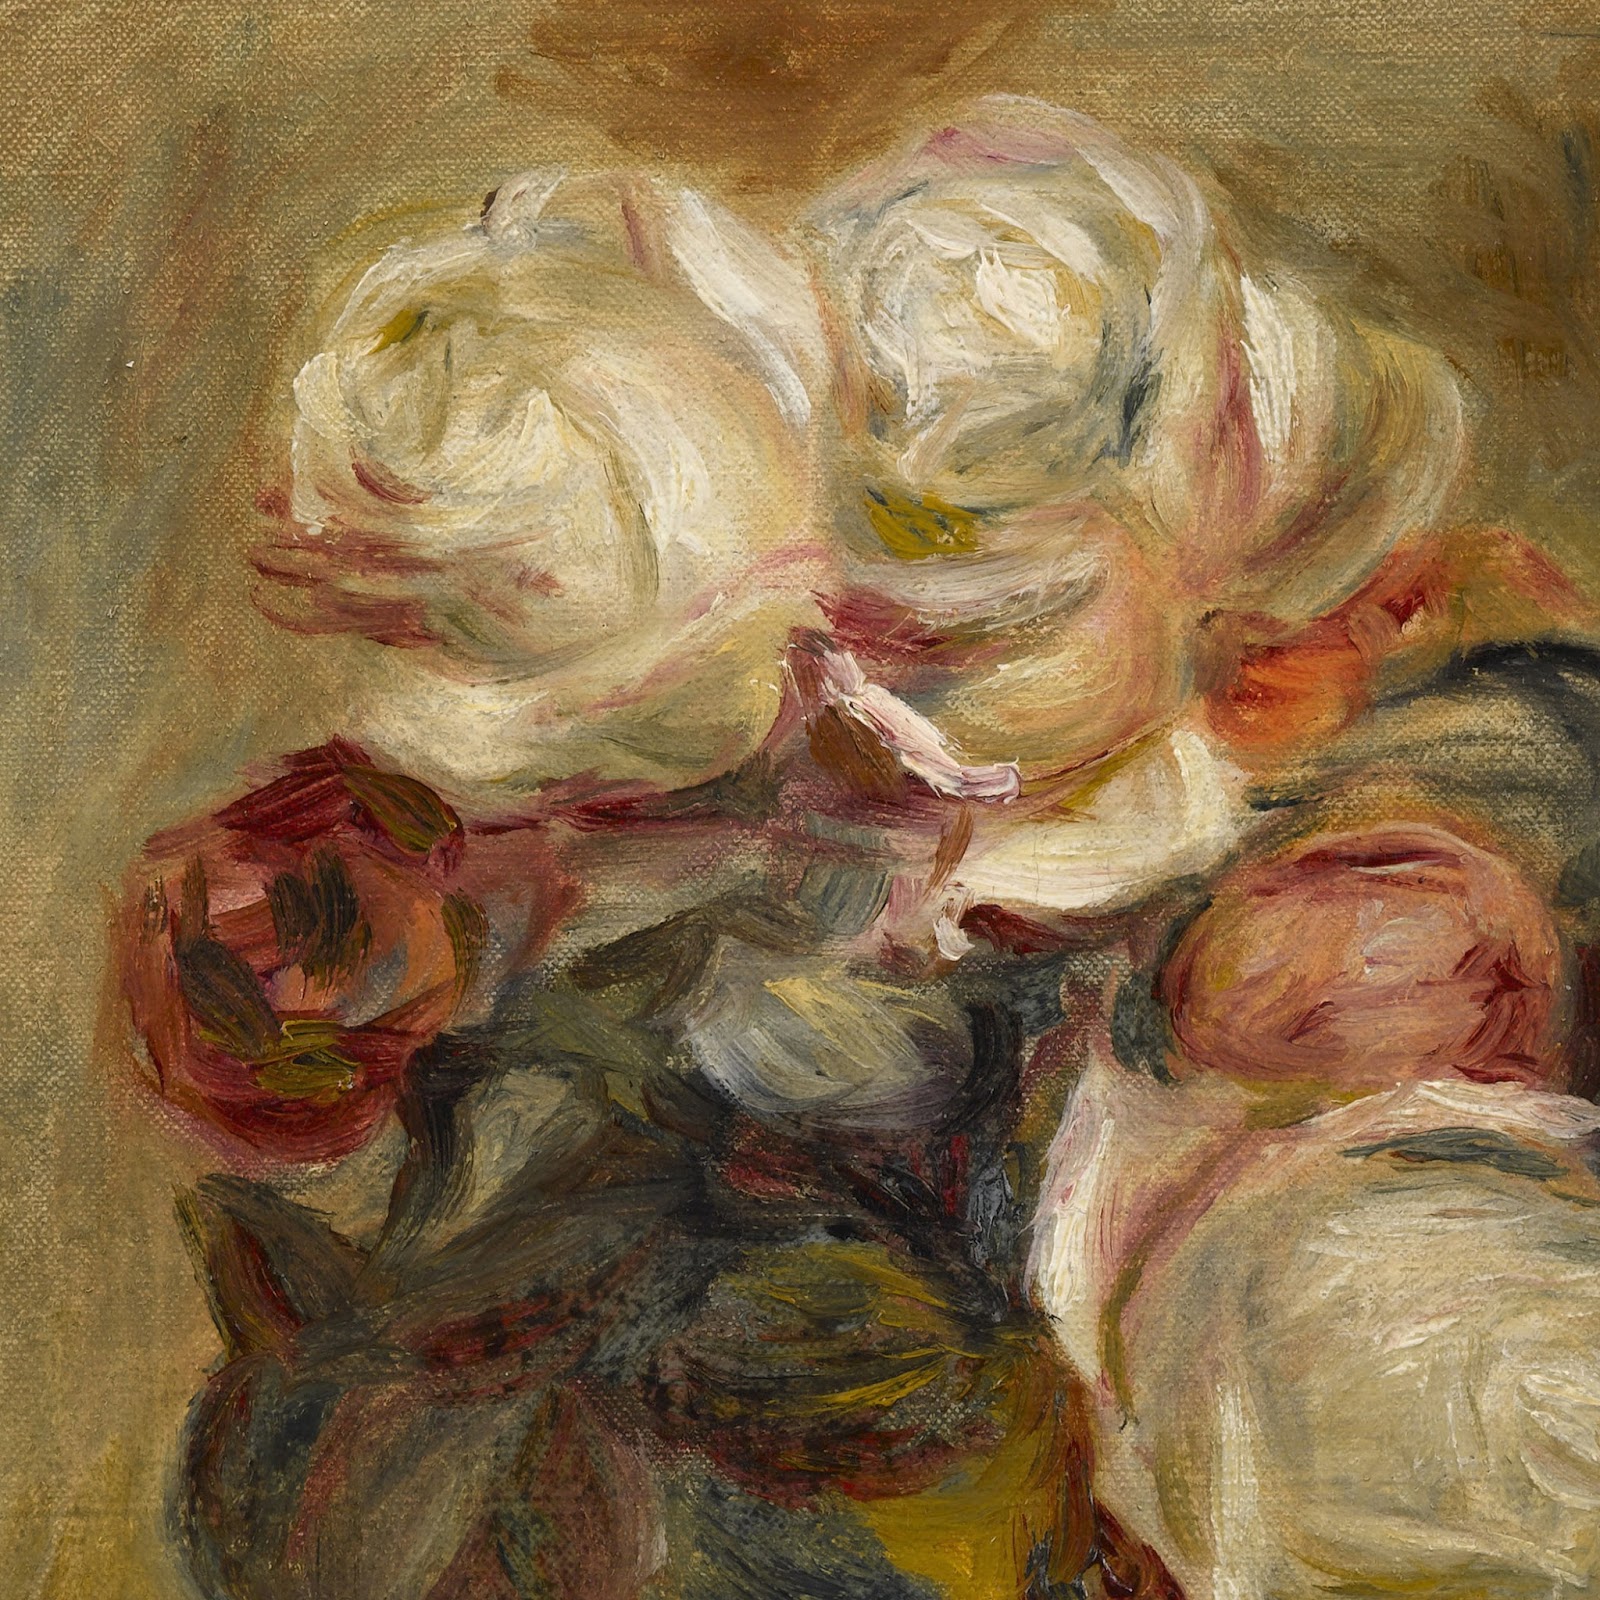 Pierre+Auguste+Renoir-1841-1-19 (230).jpg